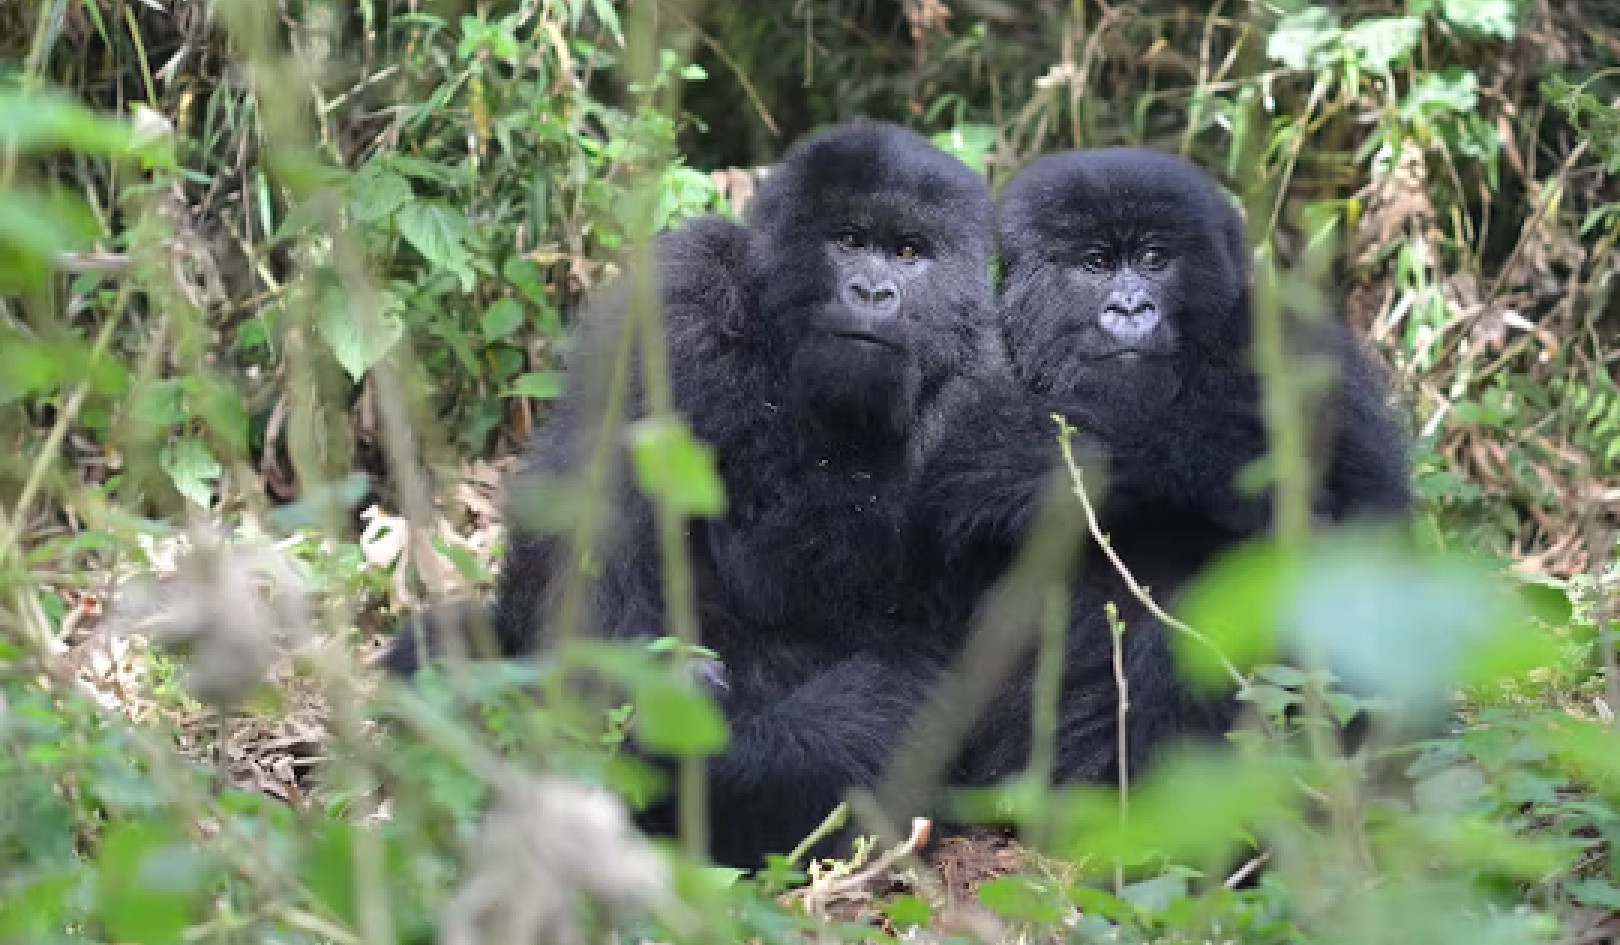 Prospérer face à l'adversité : des gorilles résilients révèlent des indices sur la façon de surmonter le malheur de l'enfance